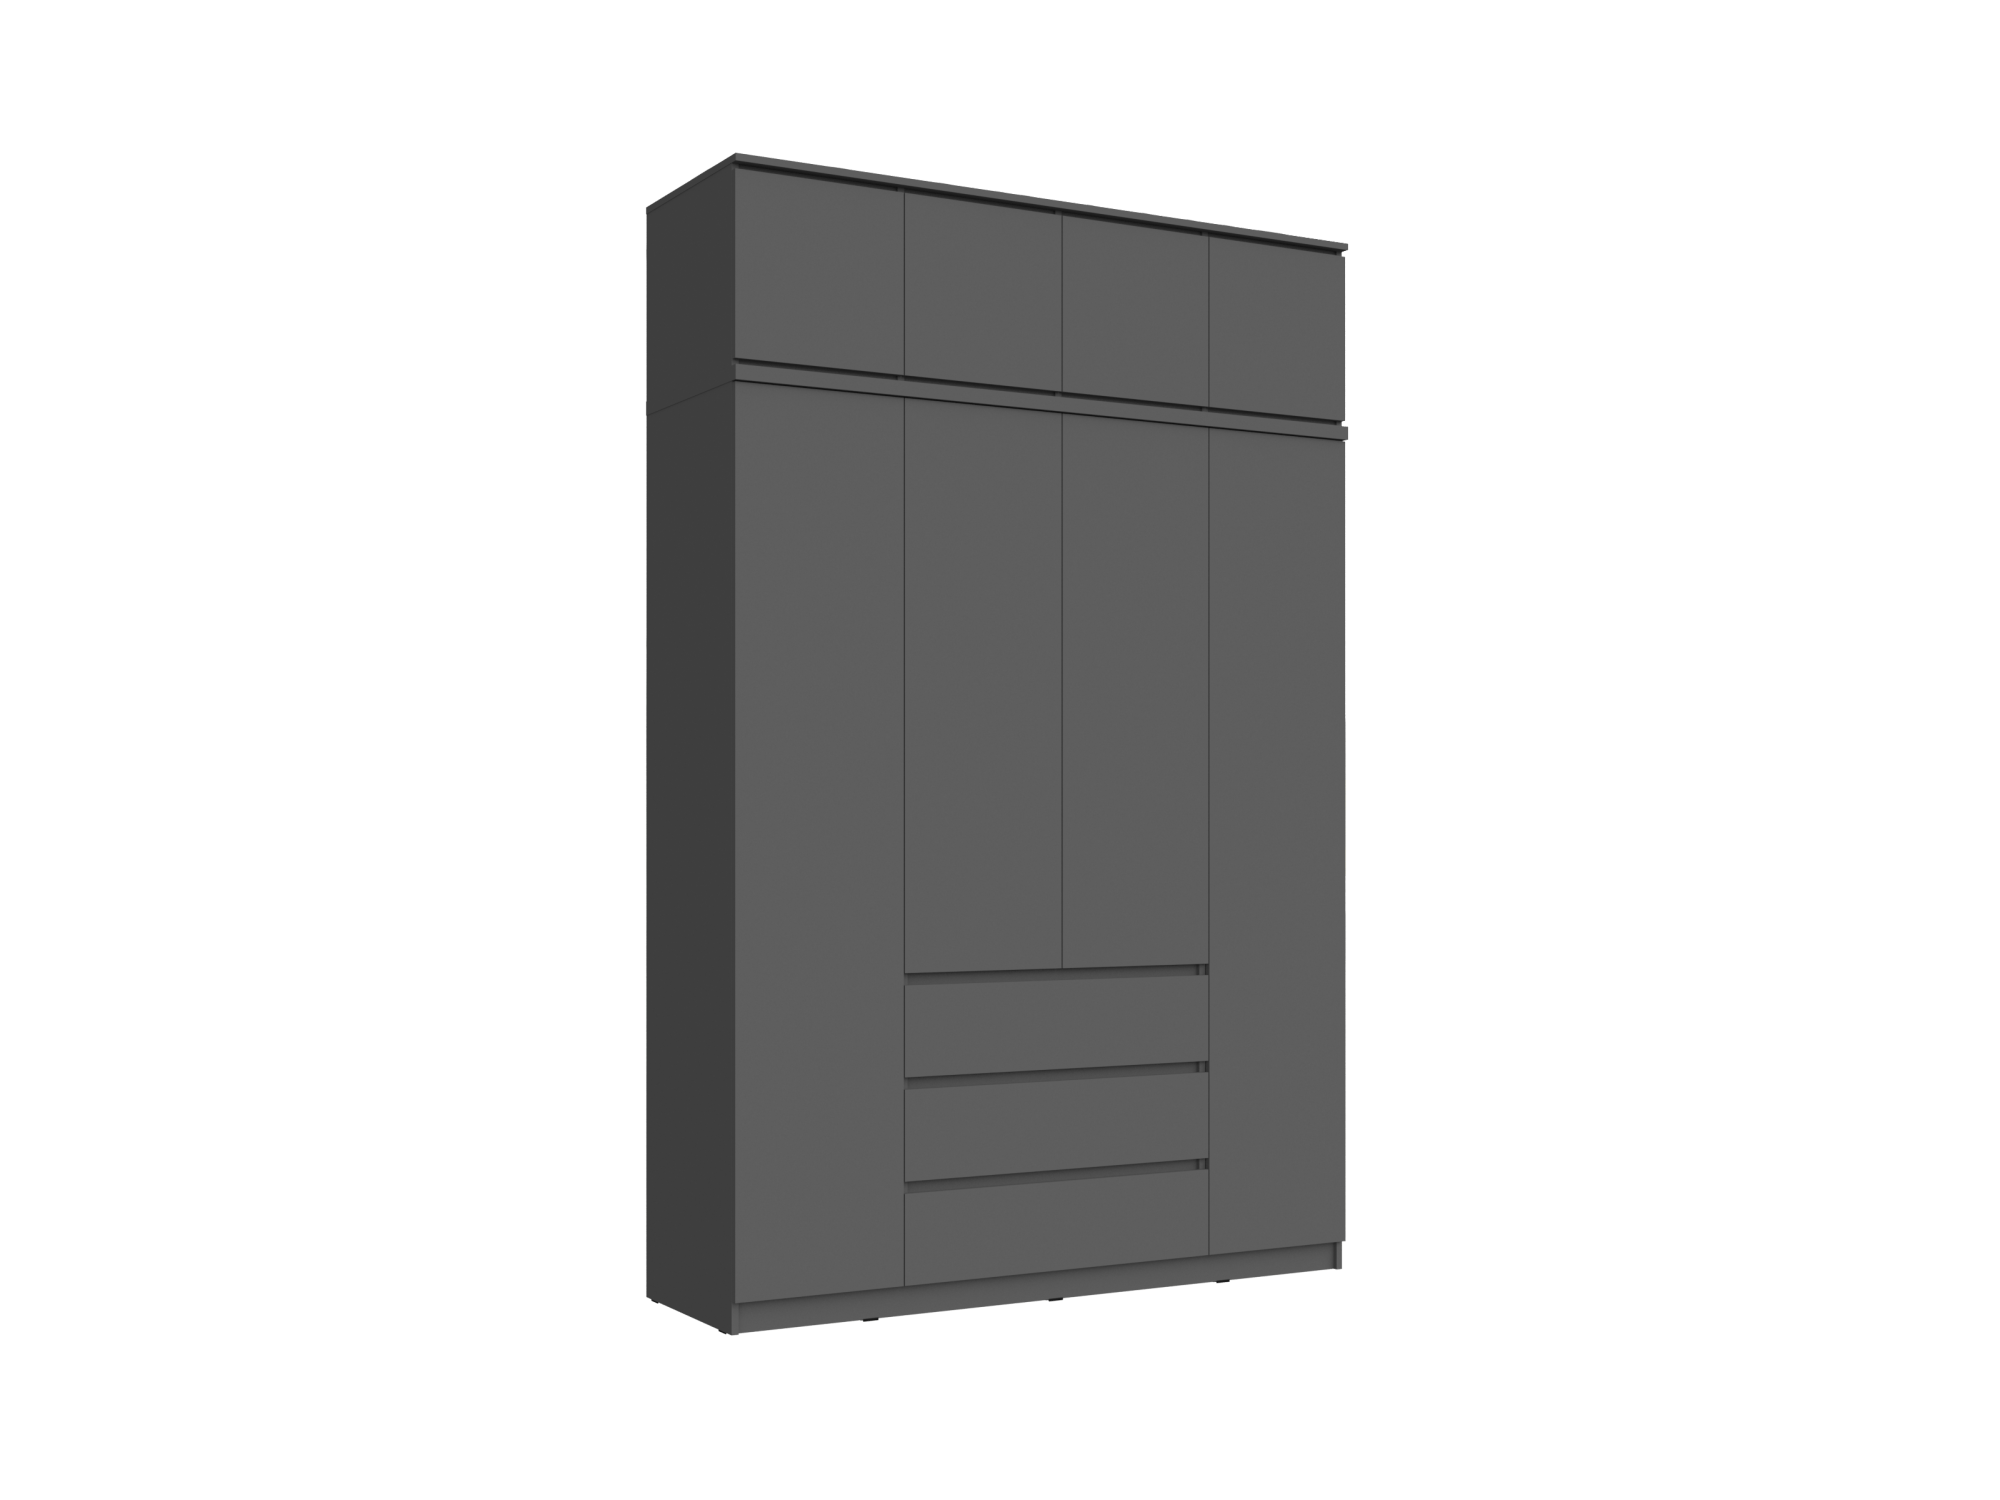 Челси Шкаф 1600 + антресоль 1600 (Графит, Графит) Черный, ЛДСП челси пенал антресоль 450 графит графит черный лдсп